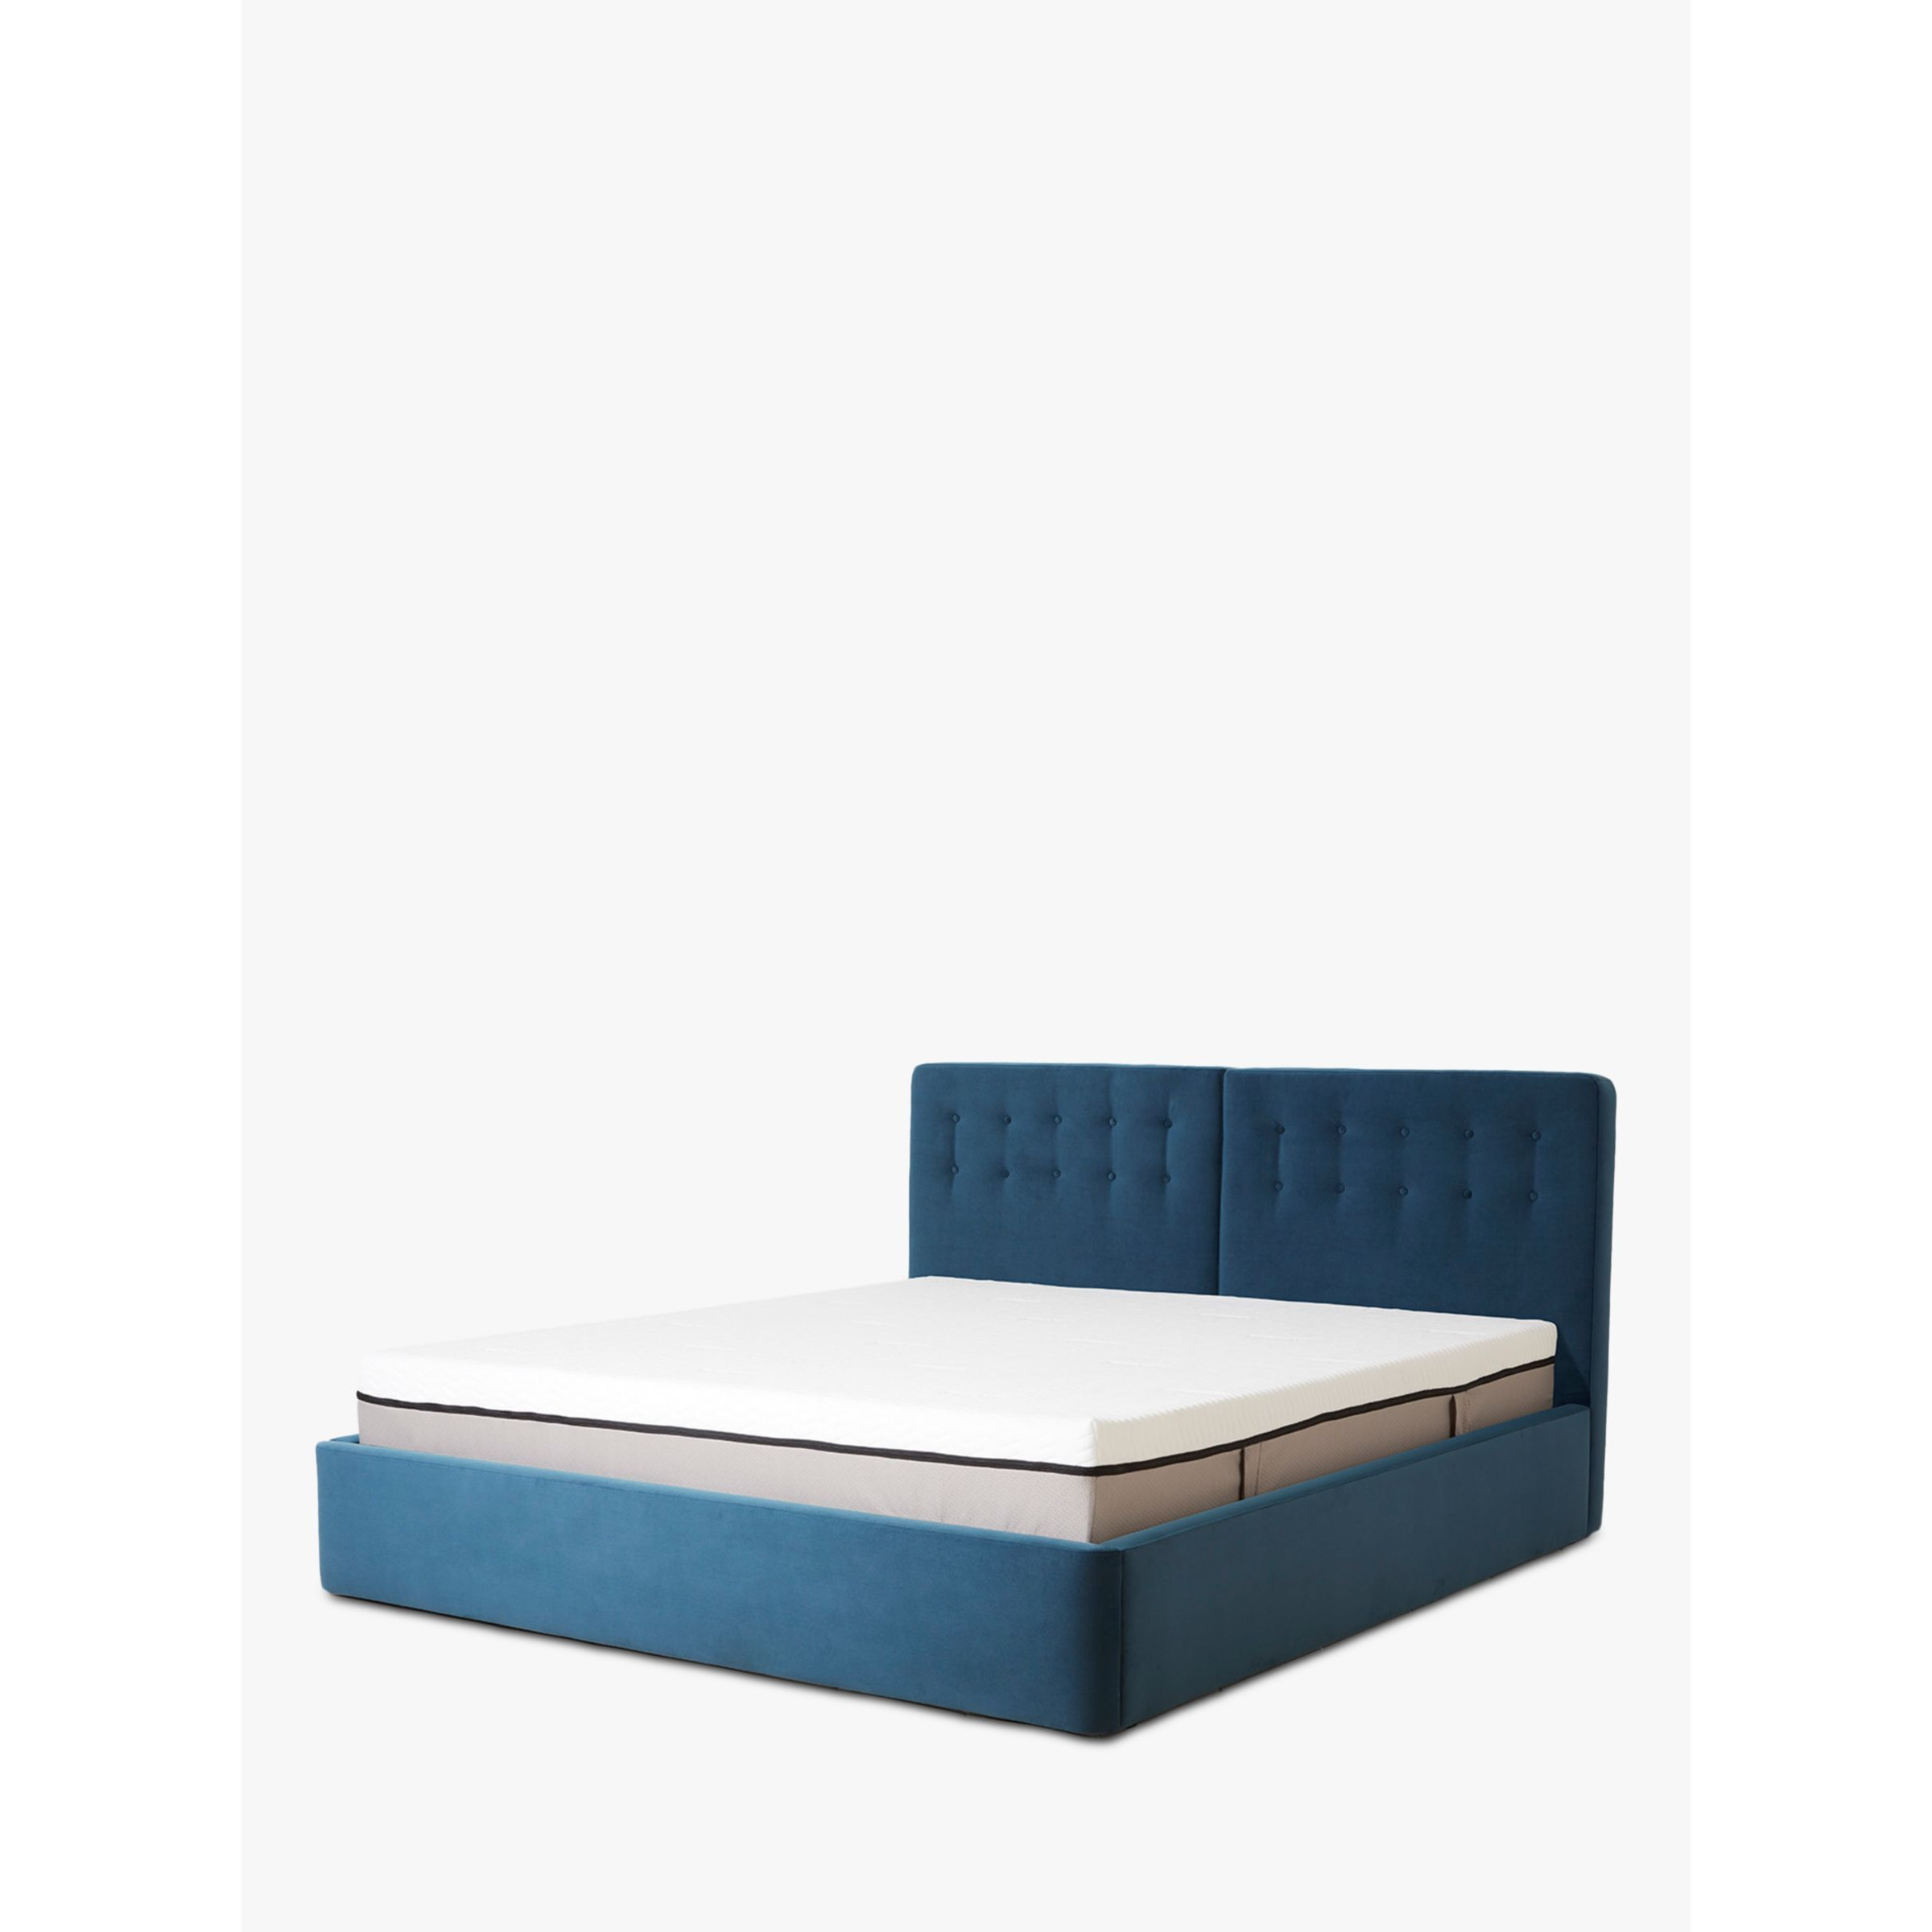 Swyft Bed 01 Upholstered Bed Frame, Super King Size - image 1